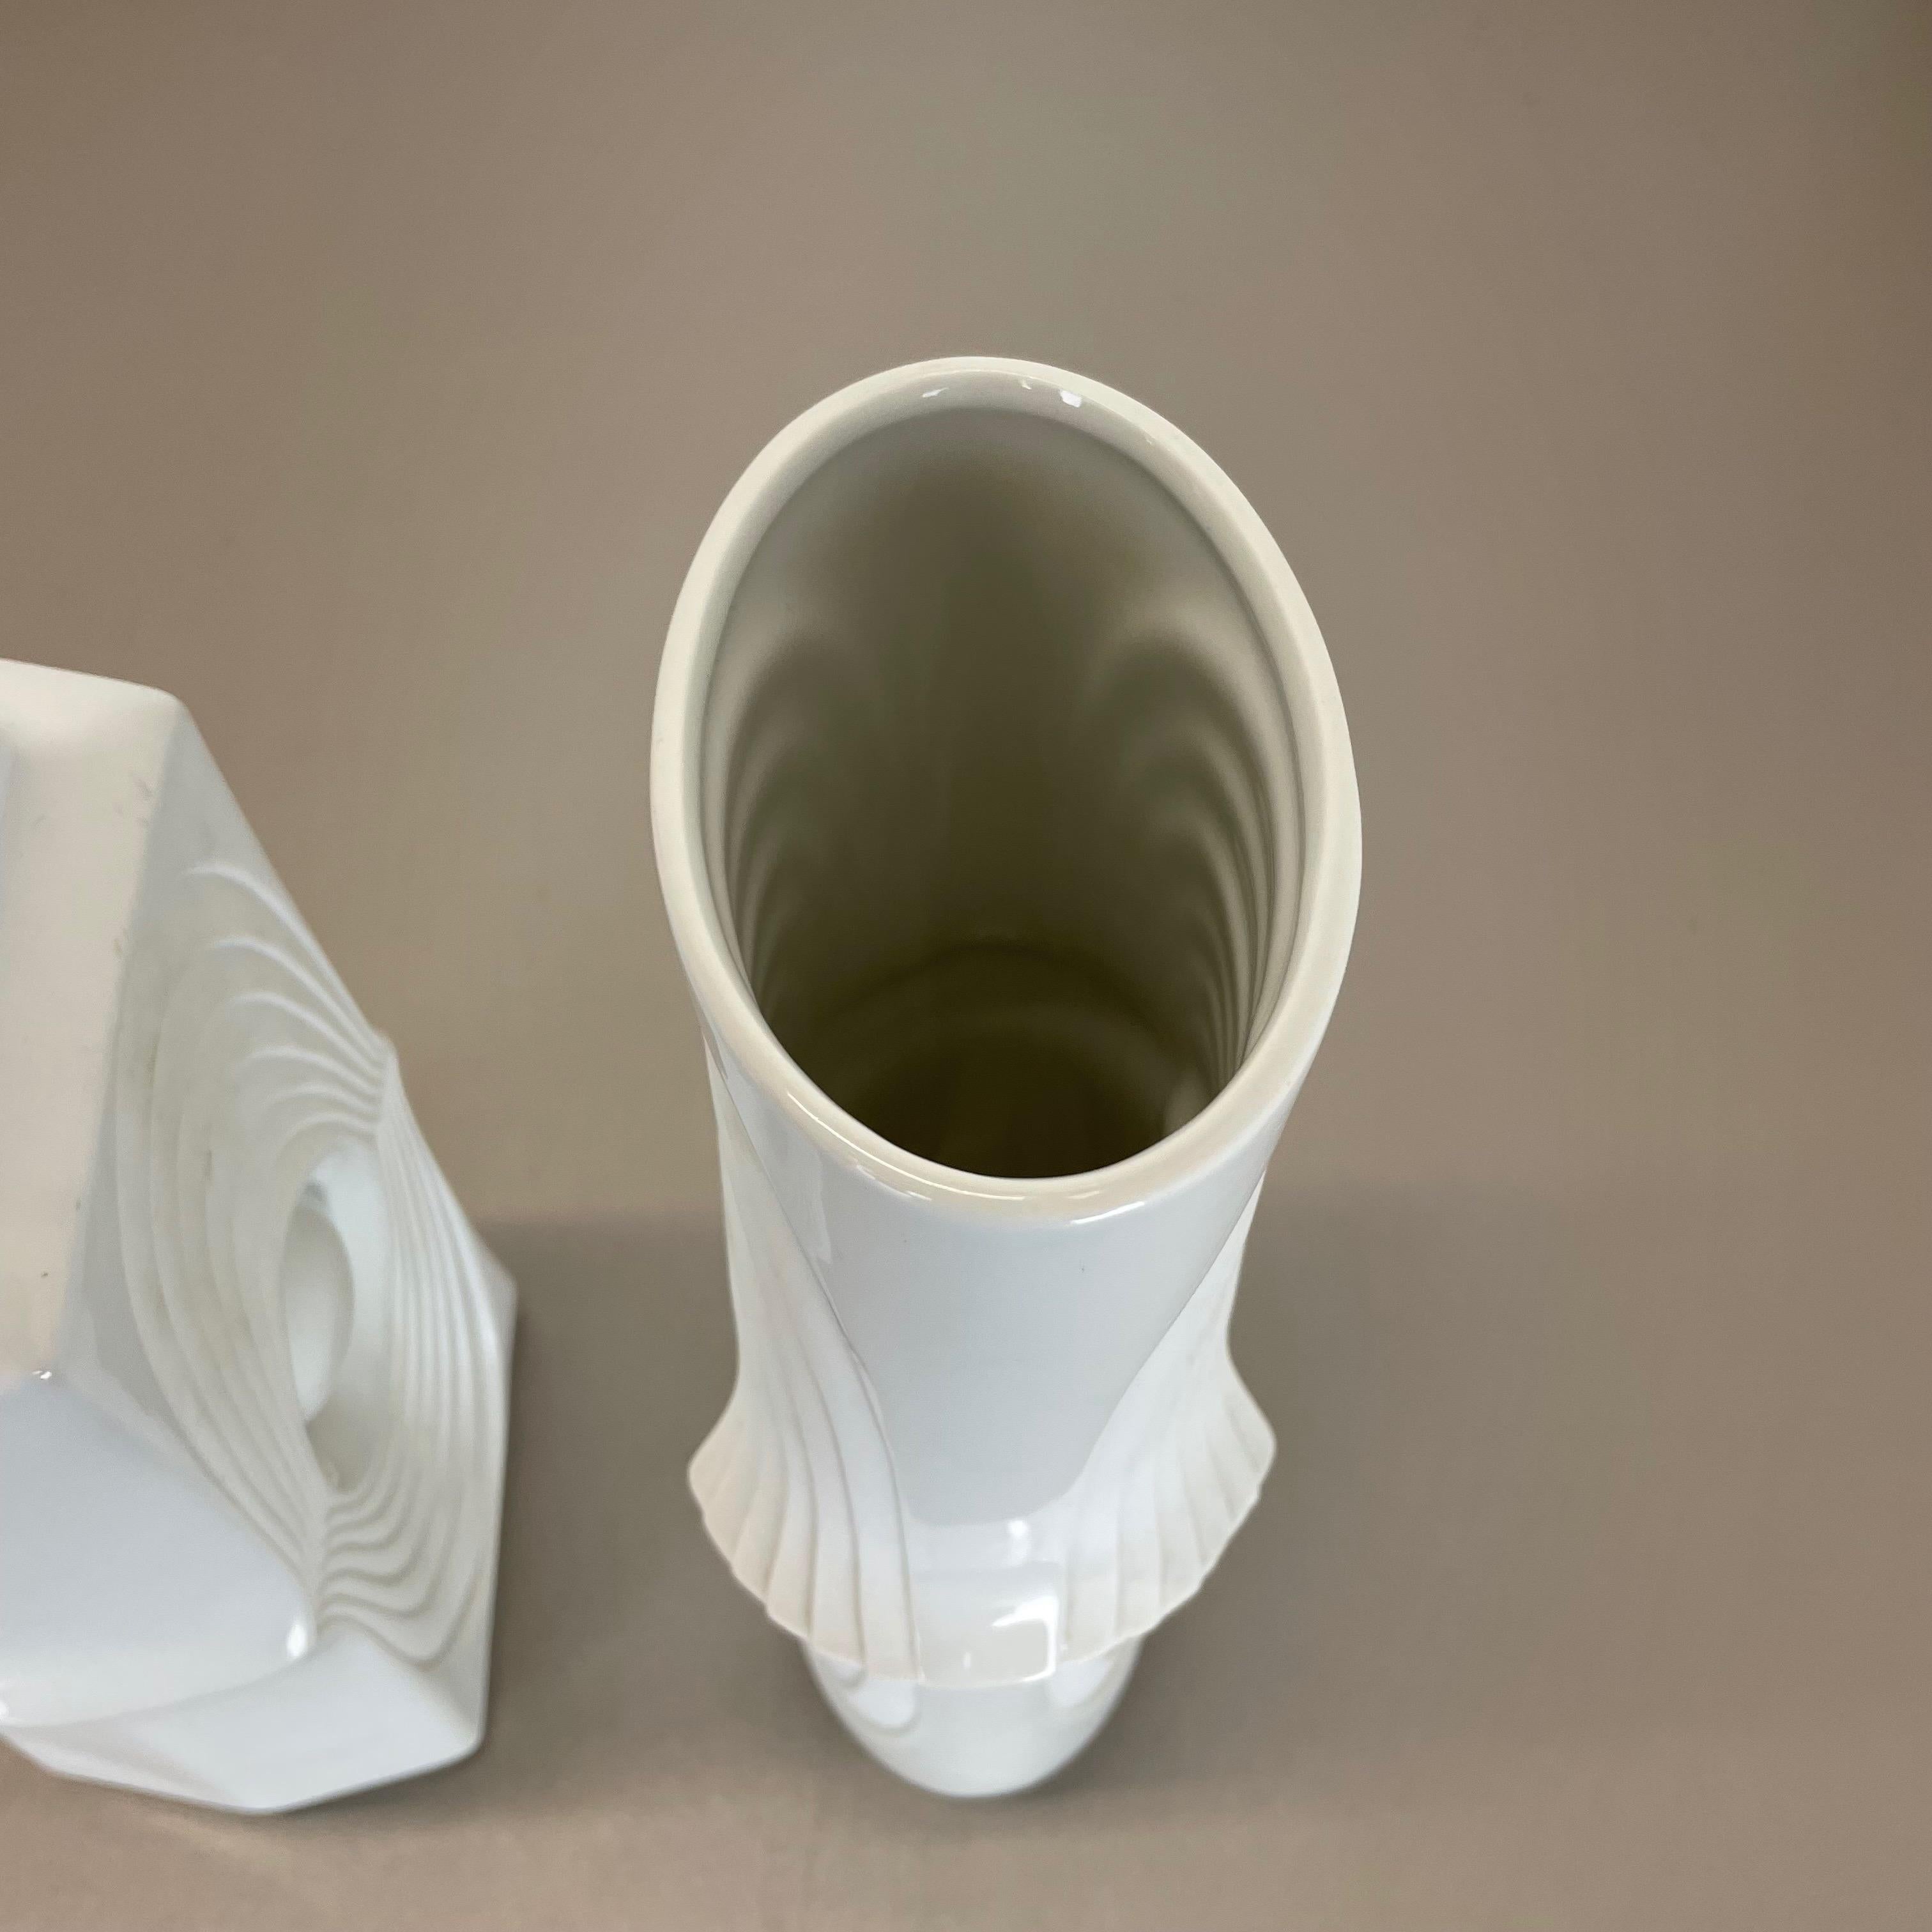 Set of 2 Original Porcelain OP Art Vase Made by Royal Bavaria KPM Germany, 1970s For Sale 9